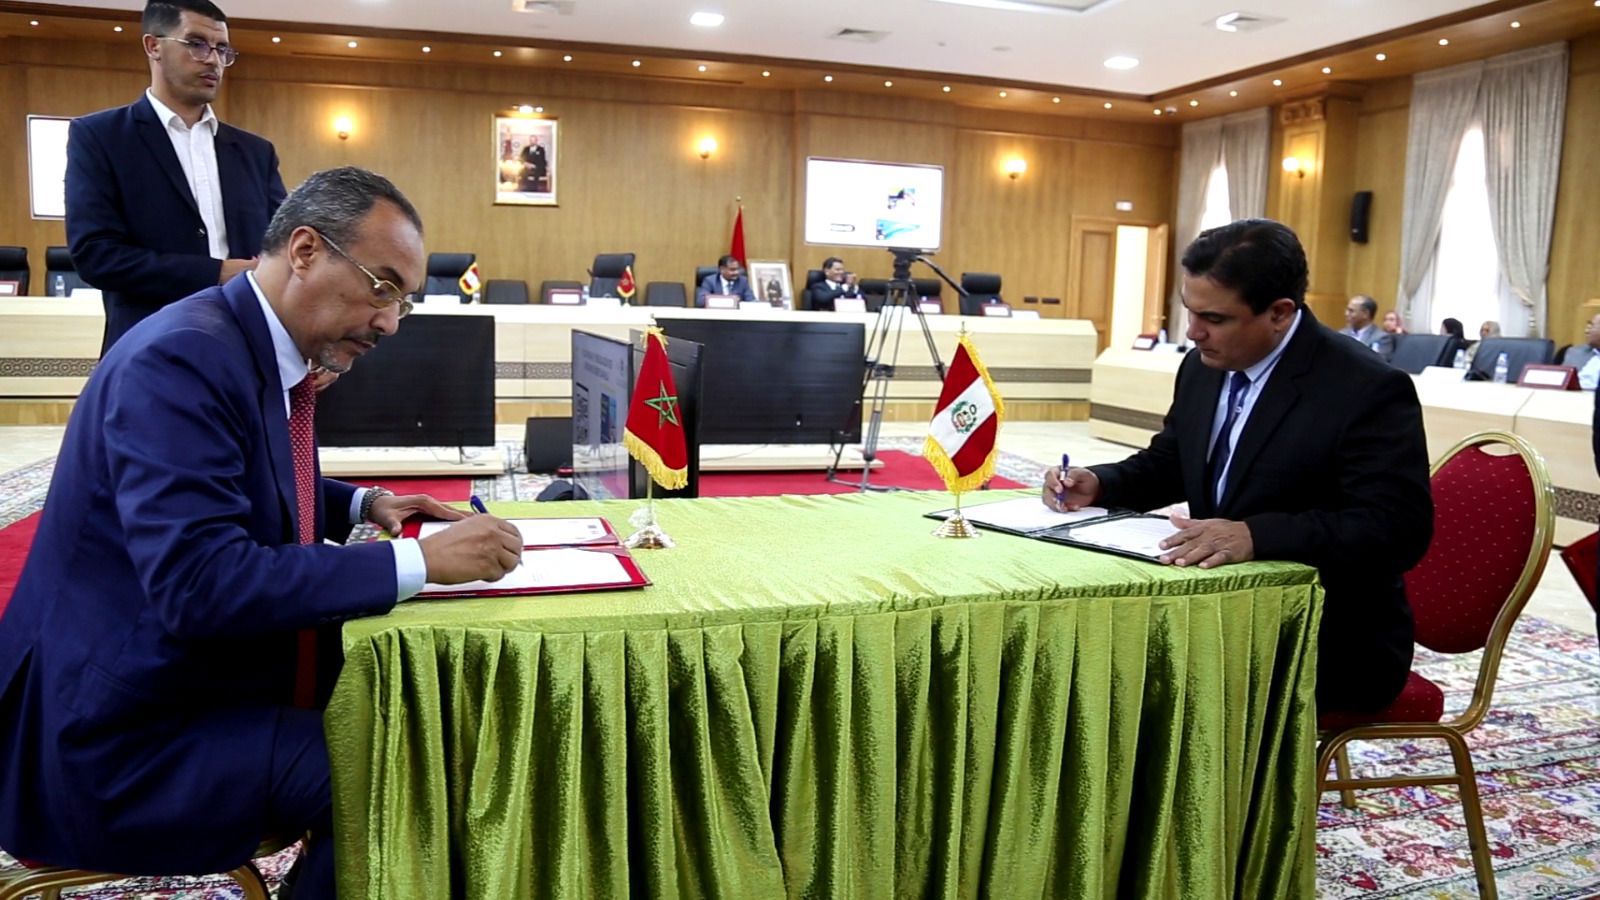 Región marroquí de Dajla y Región peruana de Piura firman acuerdo de hermanamiento - Rue20.com